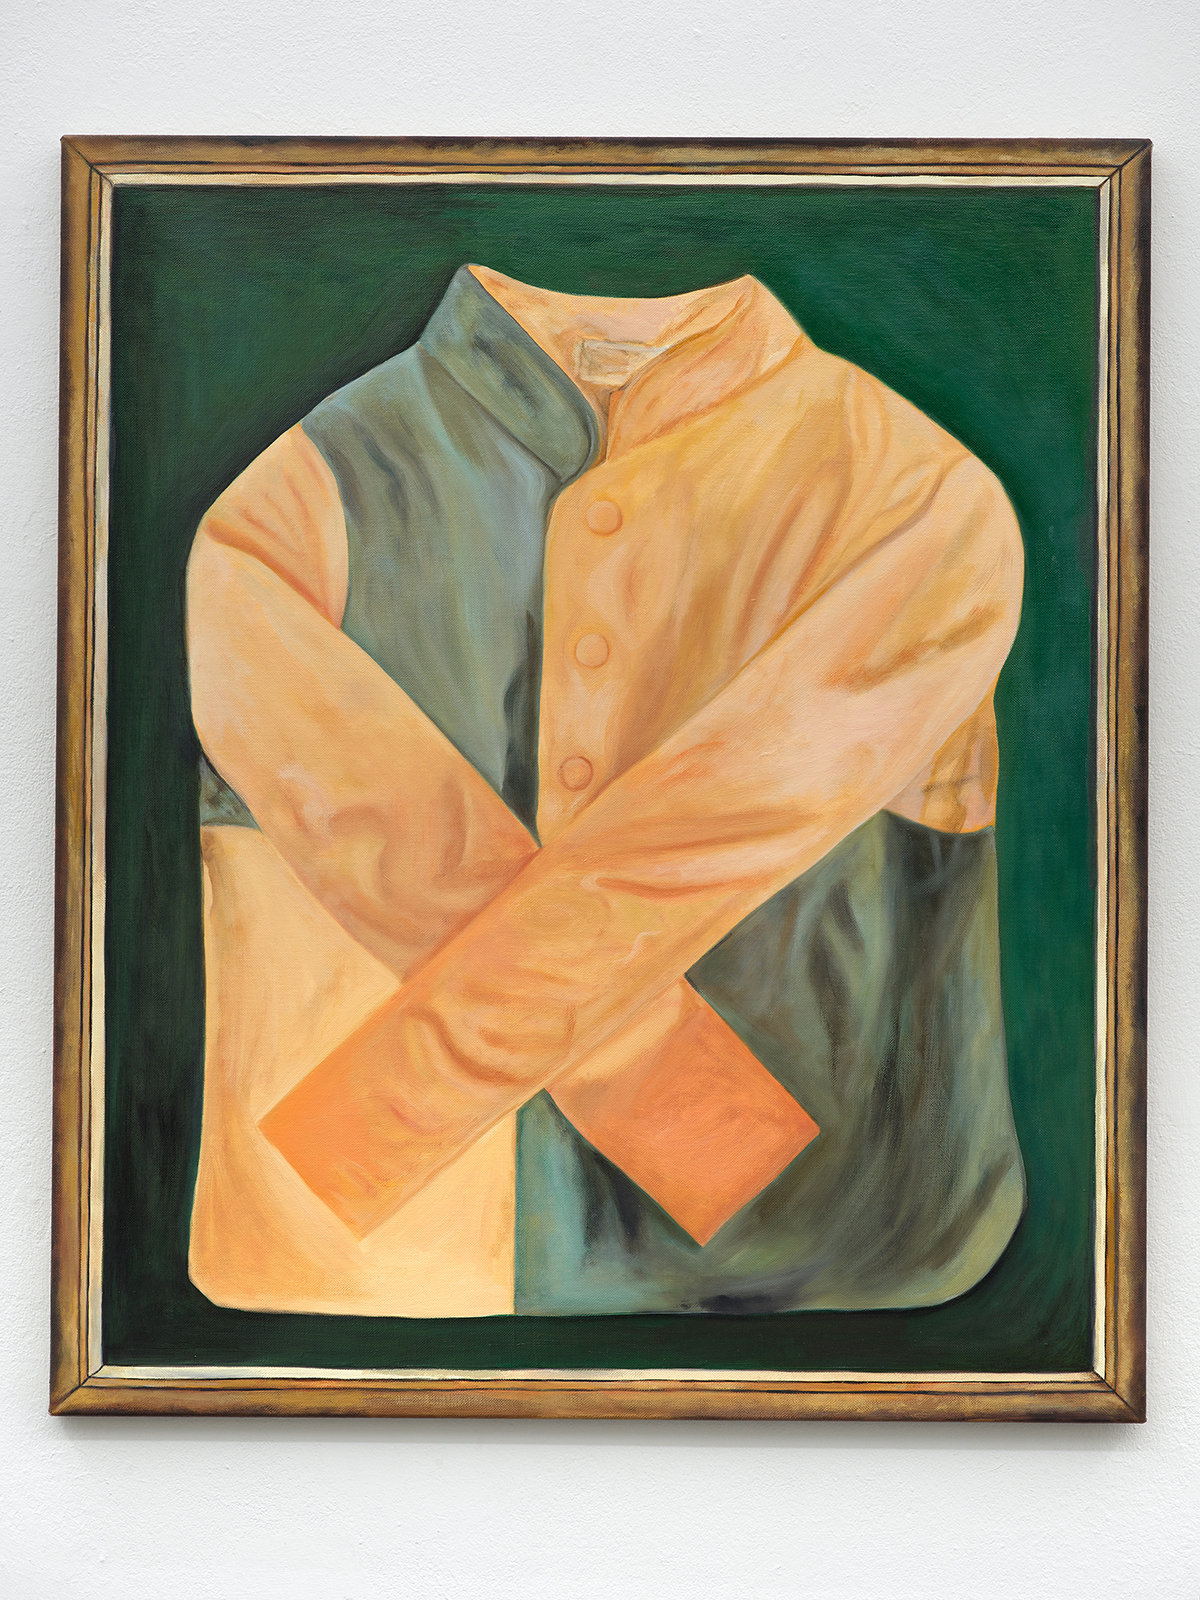 "Salz Karamell", oil on linen; 100 x 85 cm, 2020